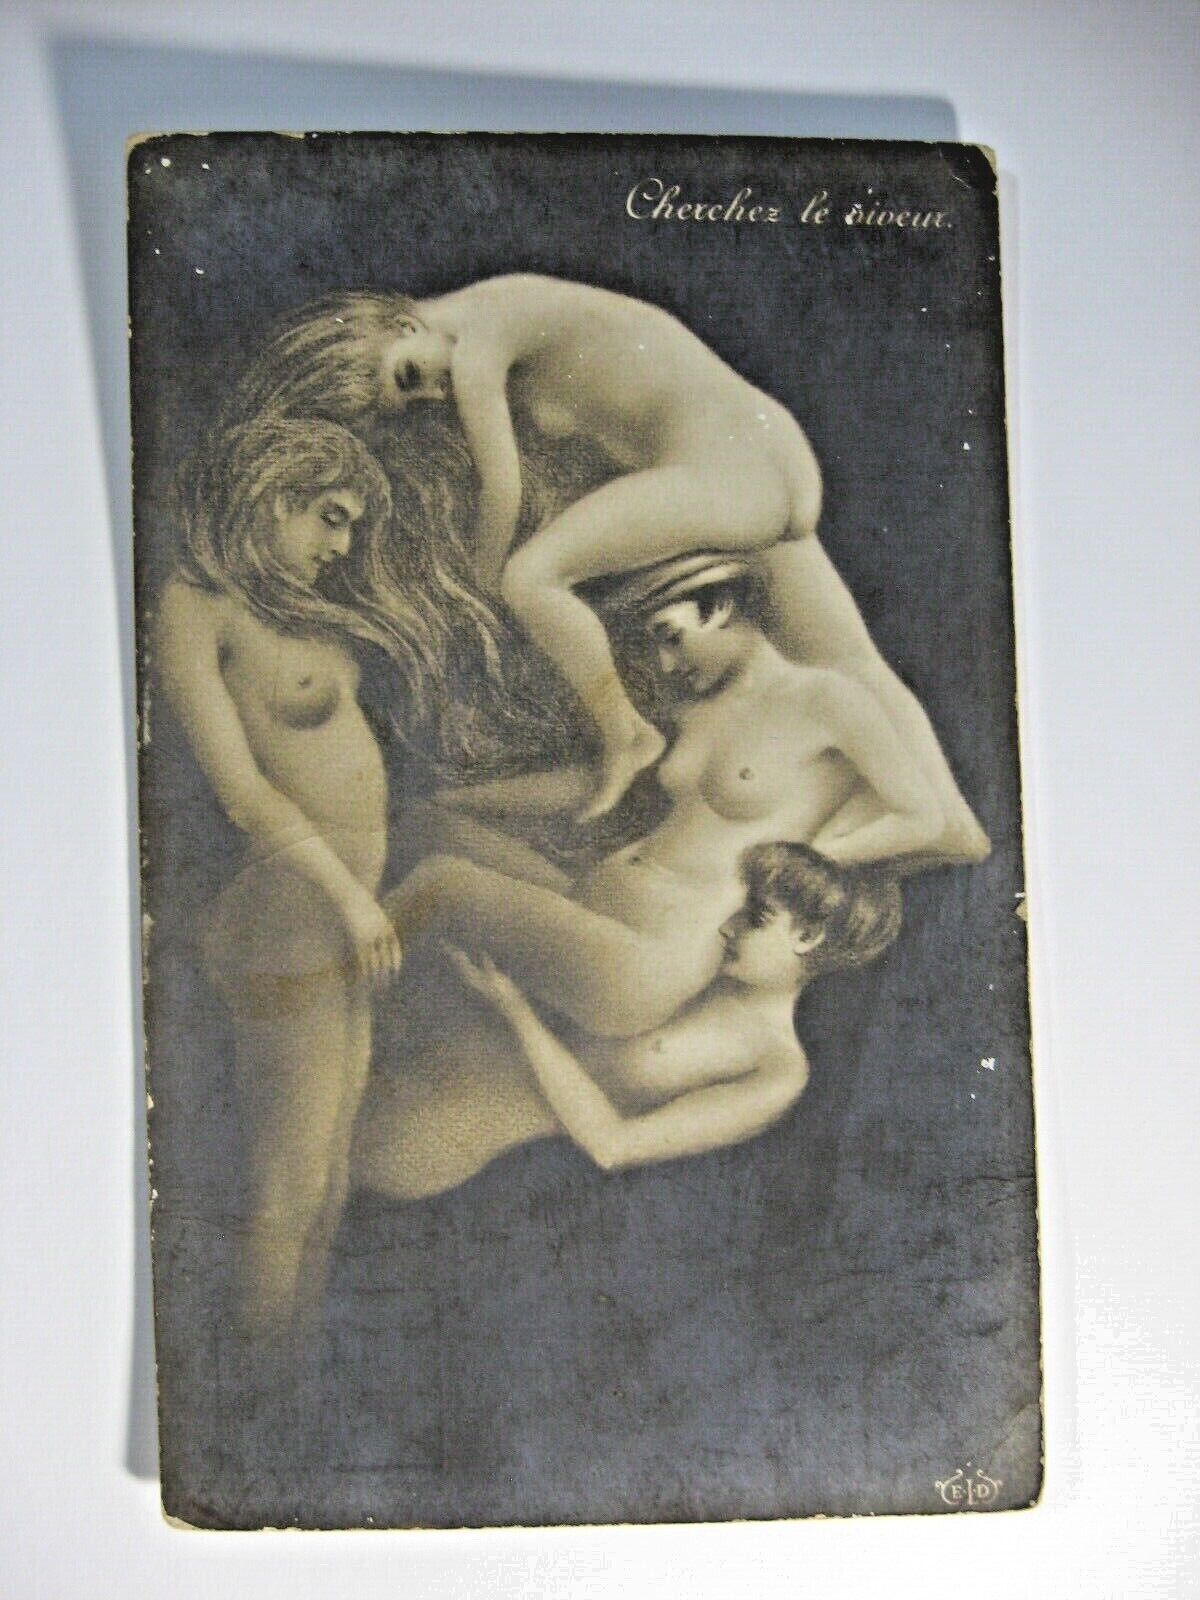 Very Rare Vintage Metamorphic Fantasy Nude Women Chexchez le diveux Paris c1910 